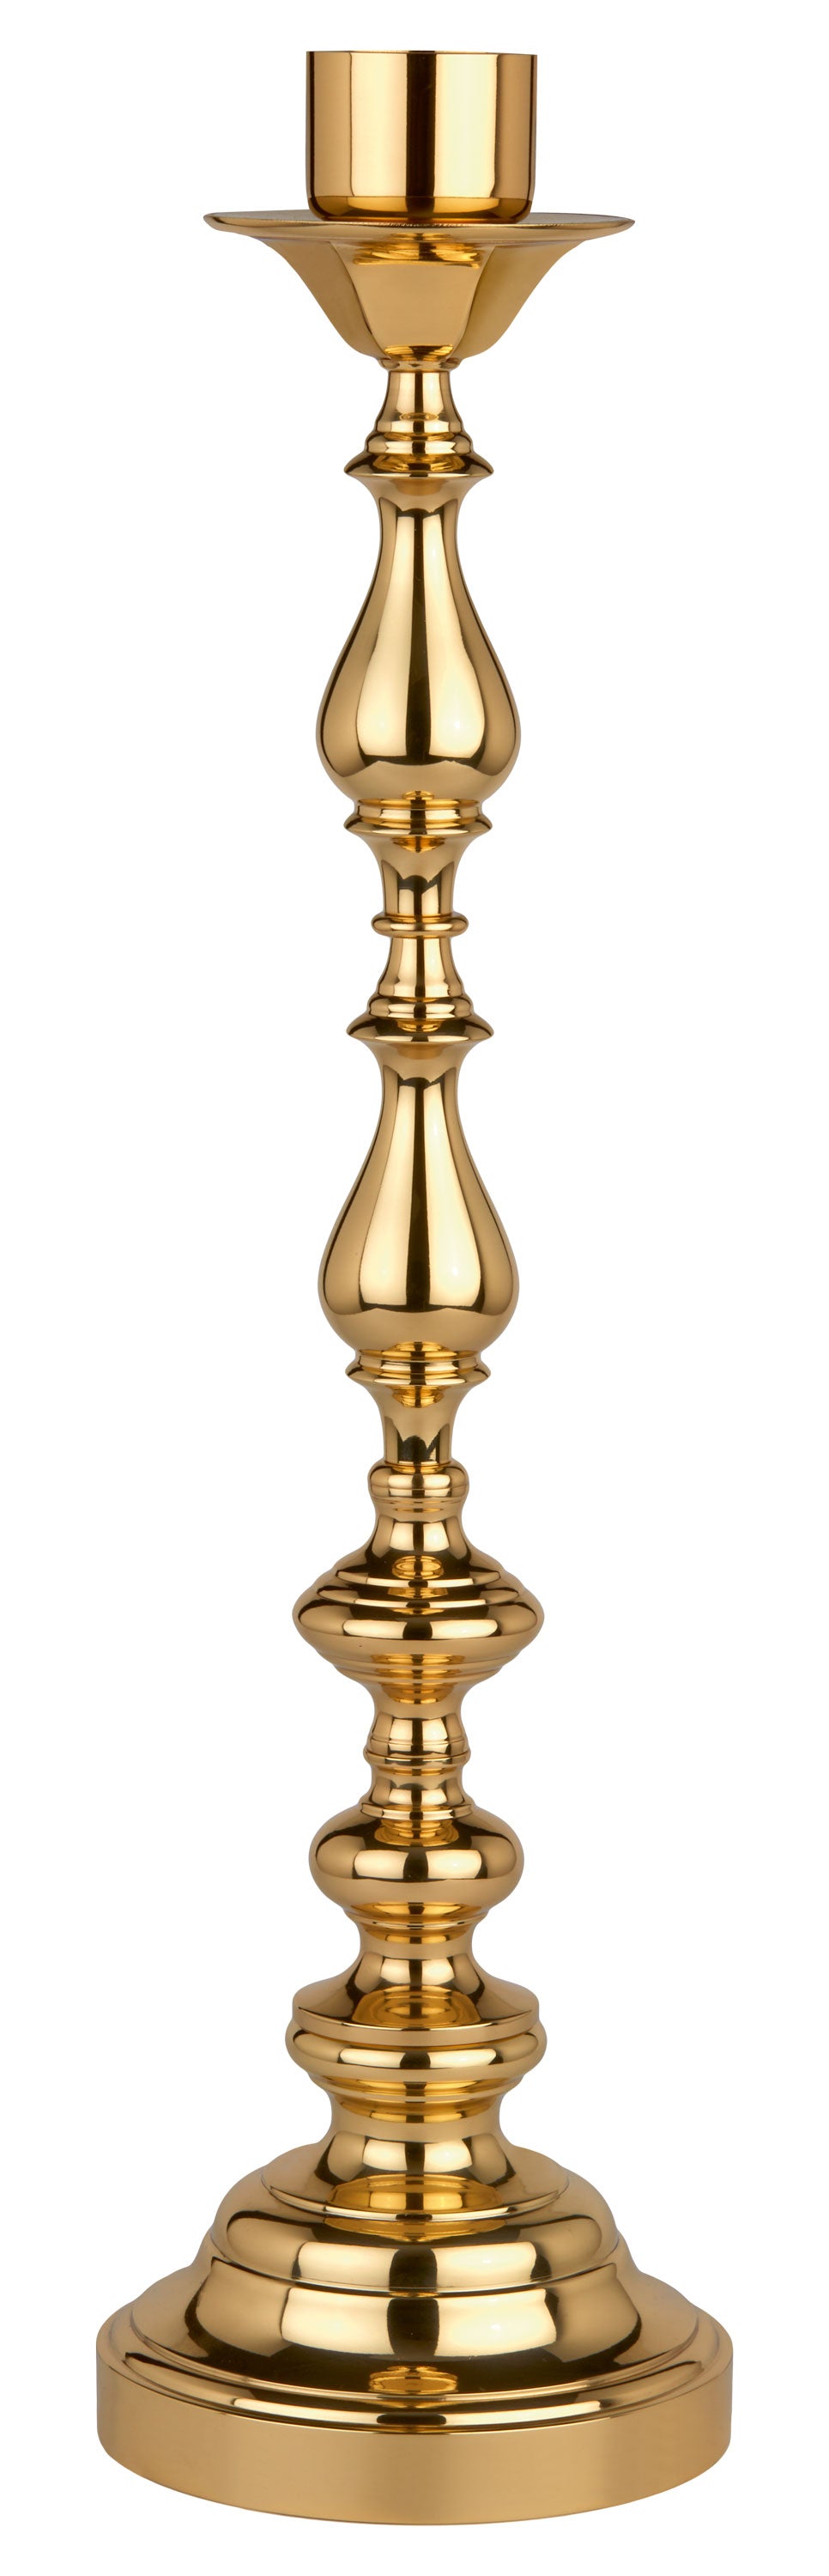 candlestick-brass-5547.jpg